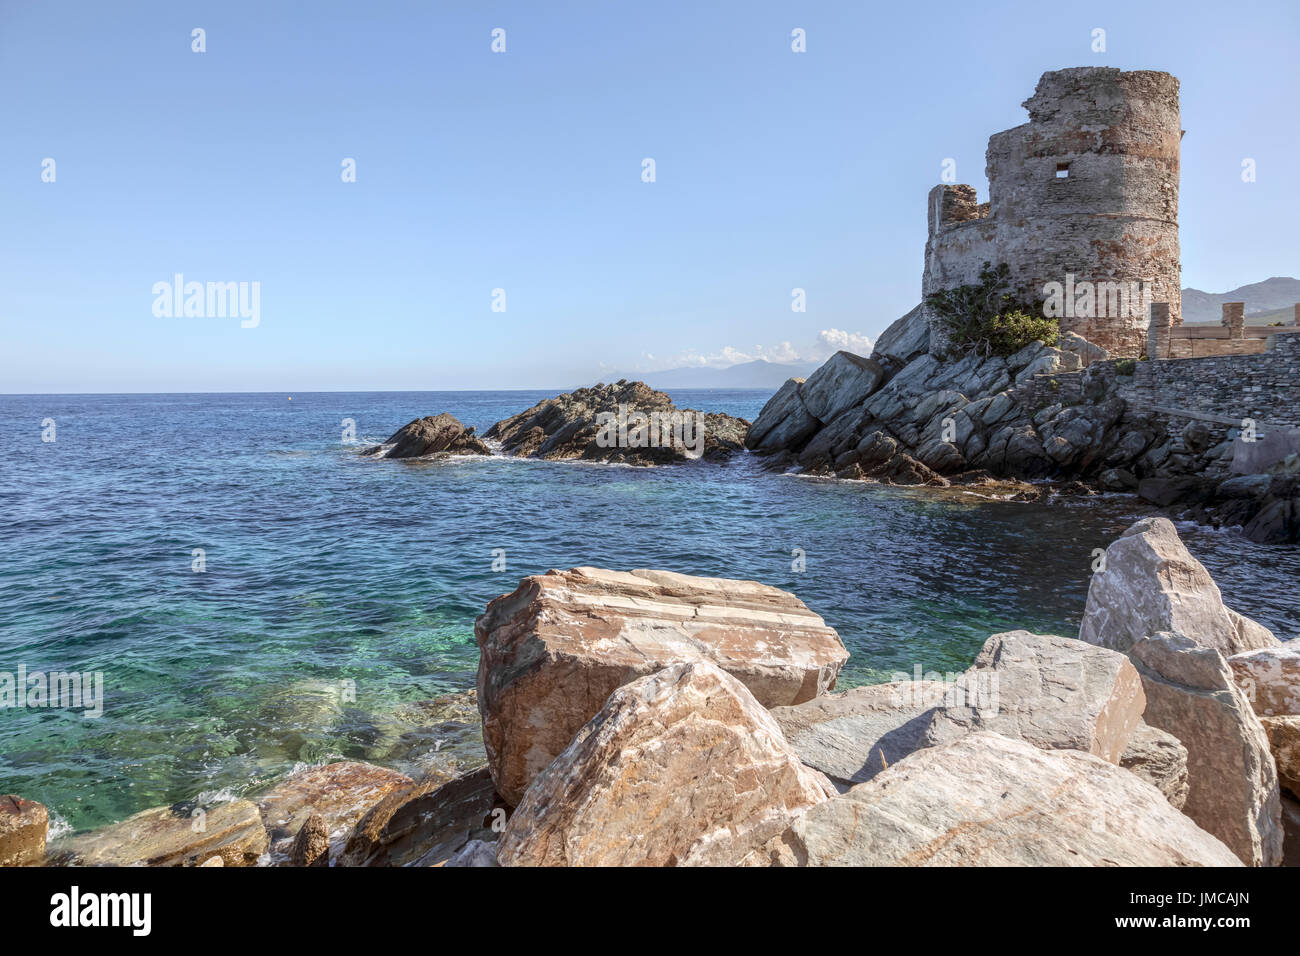 Erbalunga, Cap Corse, Corsica, France Stock Photo